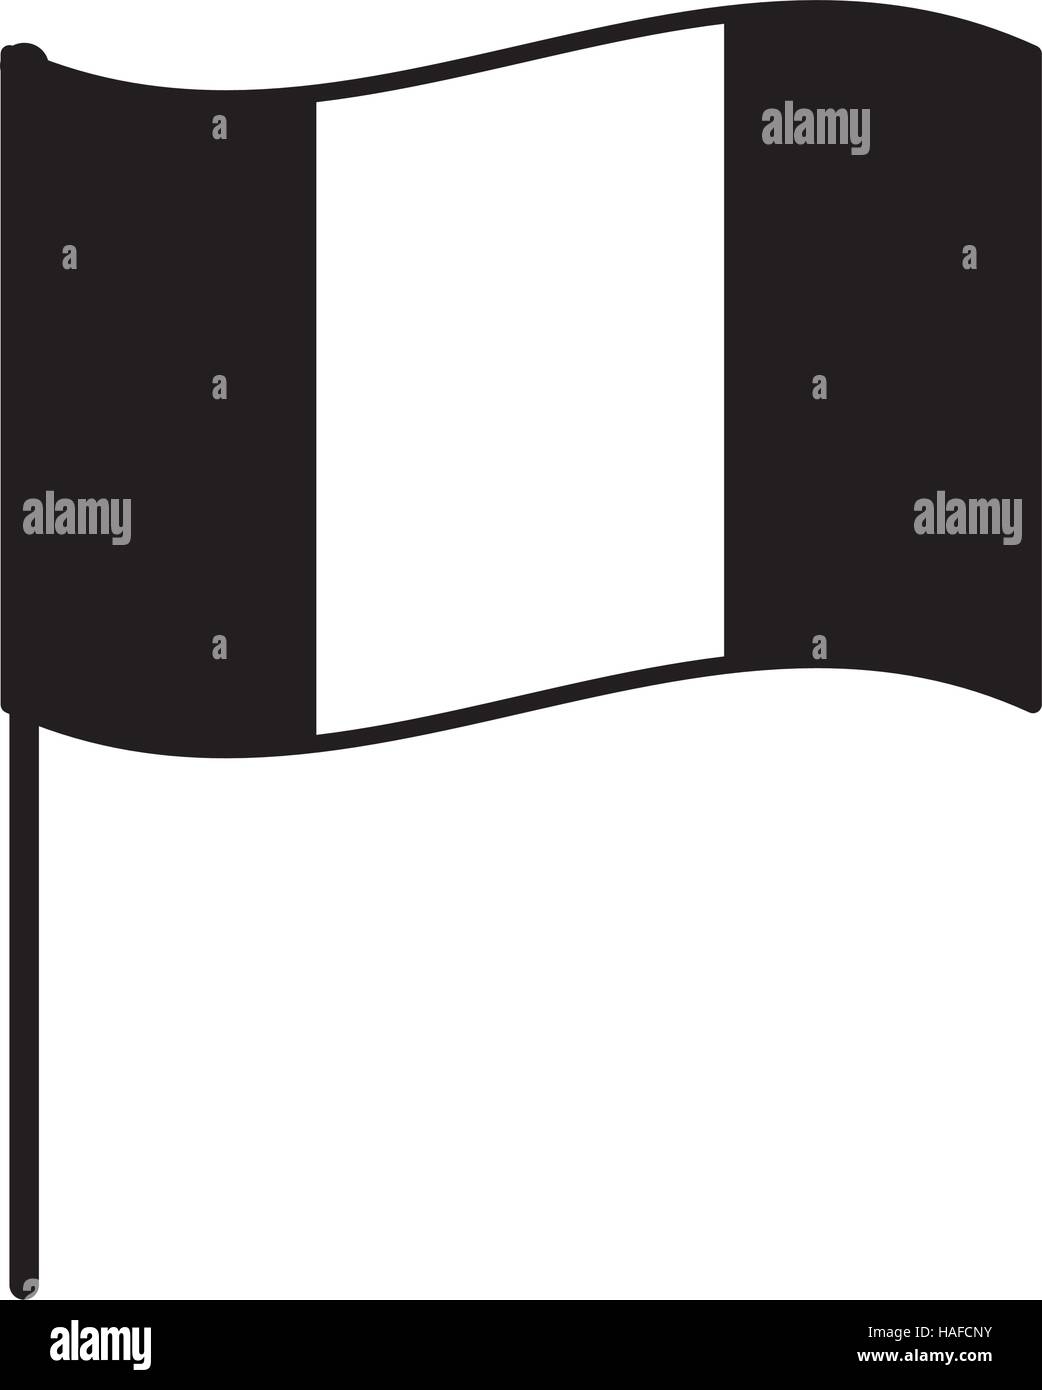 Stock-Vektorgrafik - Alamy schwarz Frankreich weiße Fahne